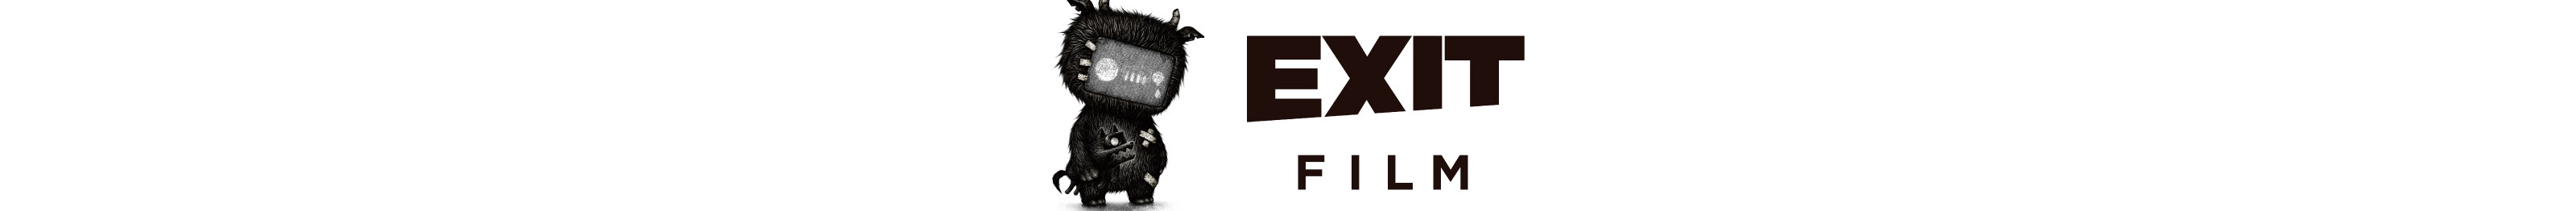 EXIT FILM inc.'s profile banner